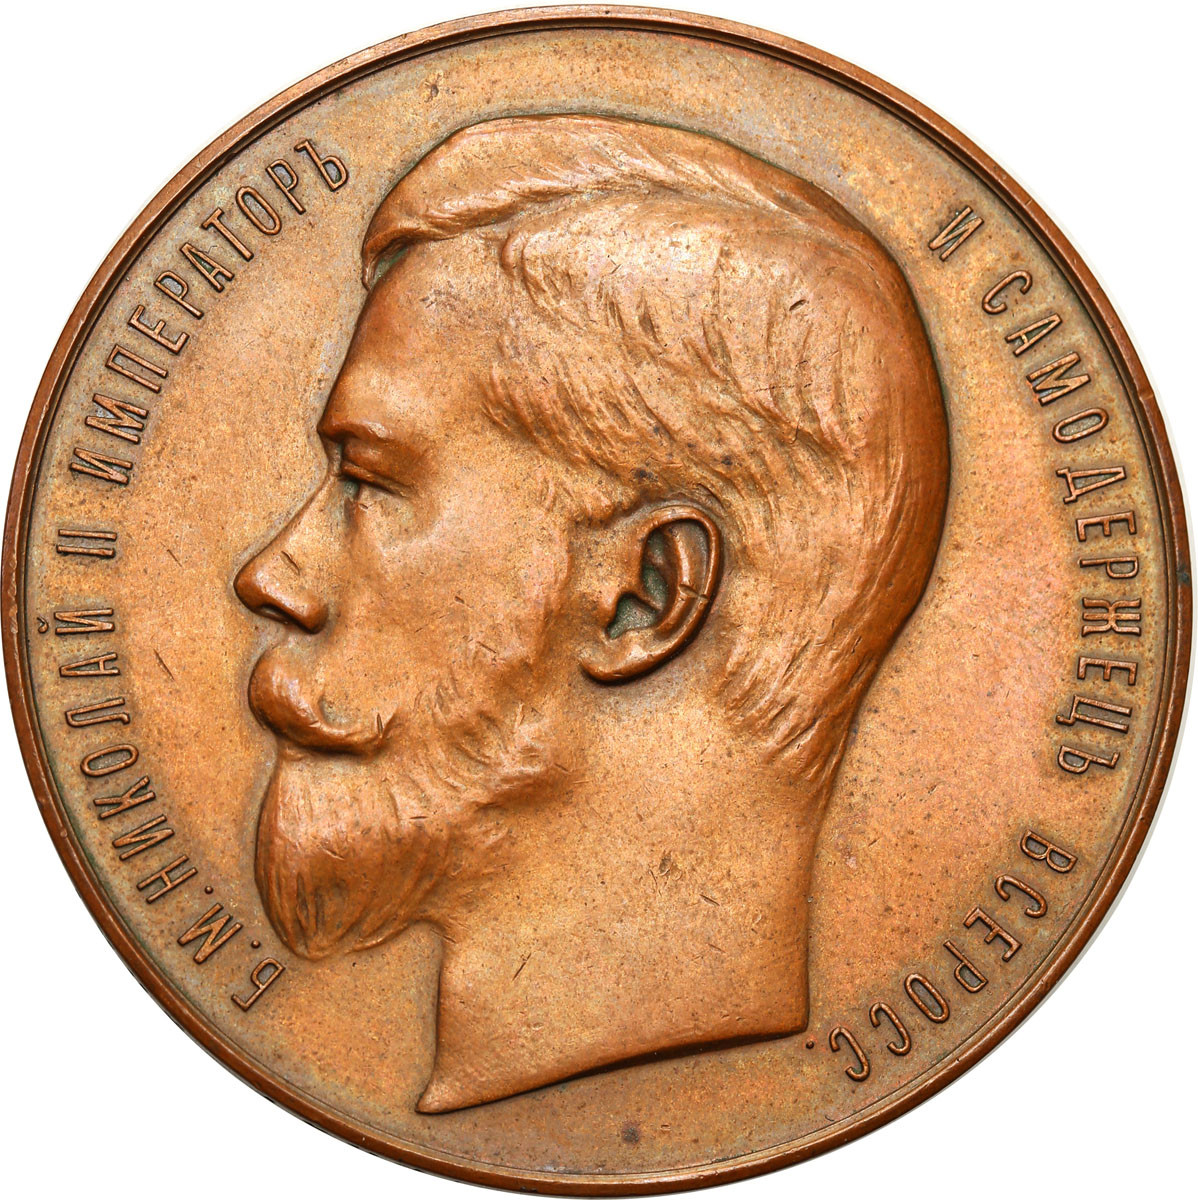 Rosja, Mikołaj II. Medal Ministerstwo Finansów za wybitne osiągnięcia w sztuce